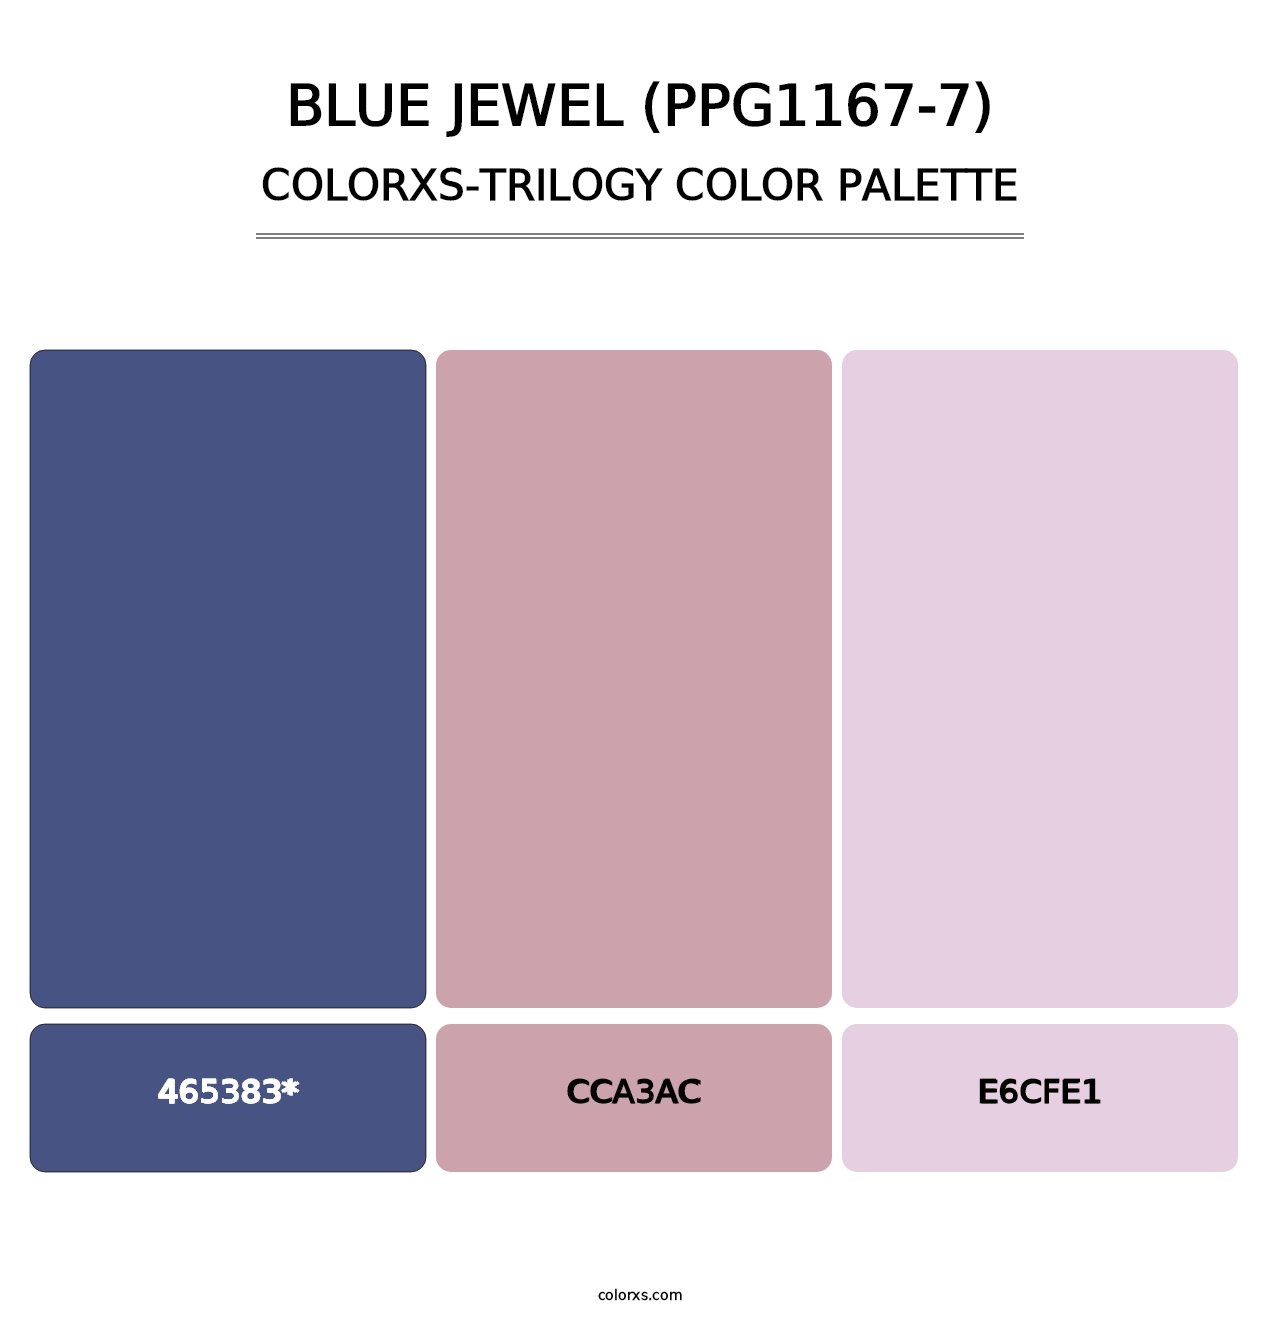 Blue Jewel (PPG1167-7) - Colorxs Trilogy Palette